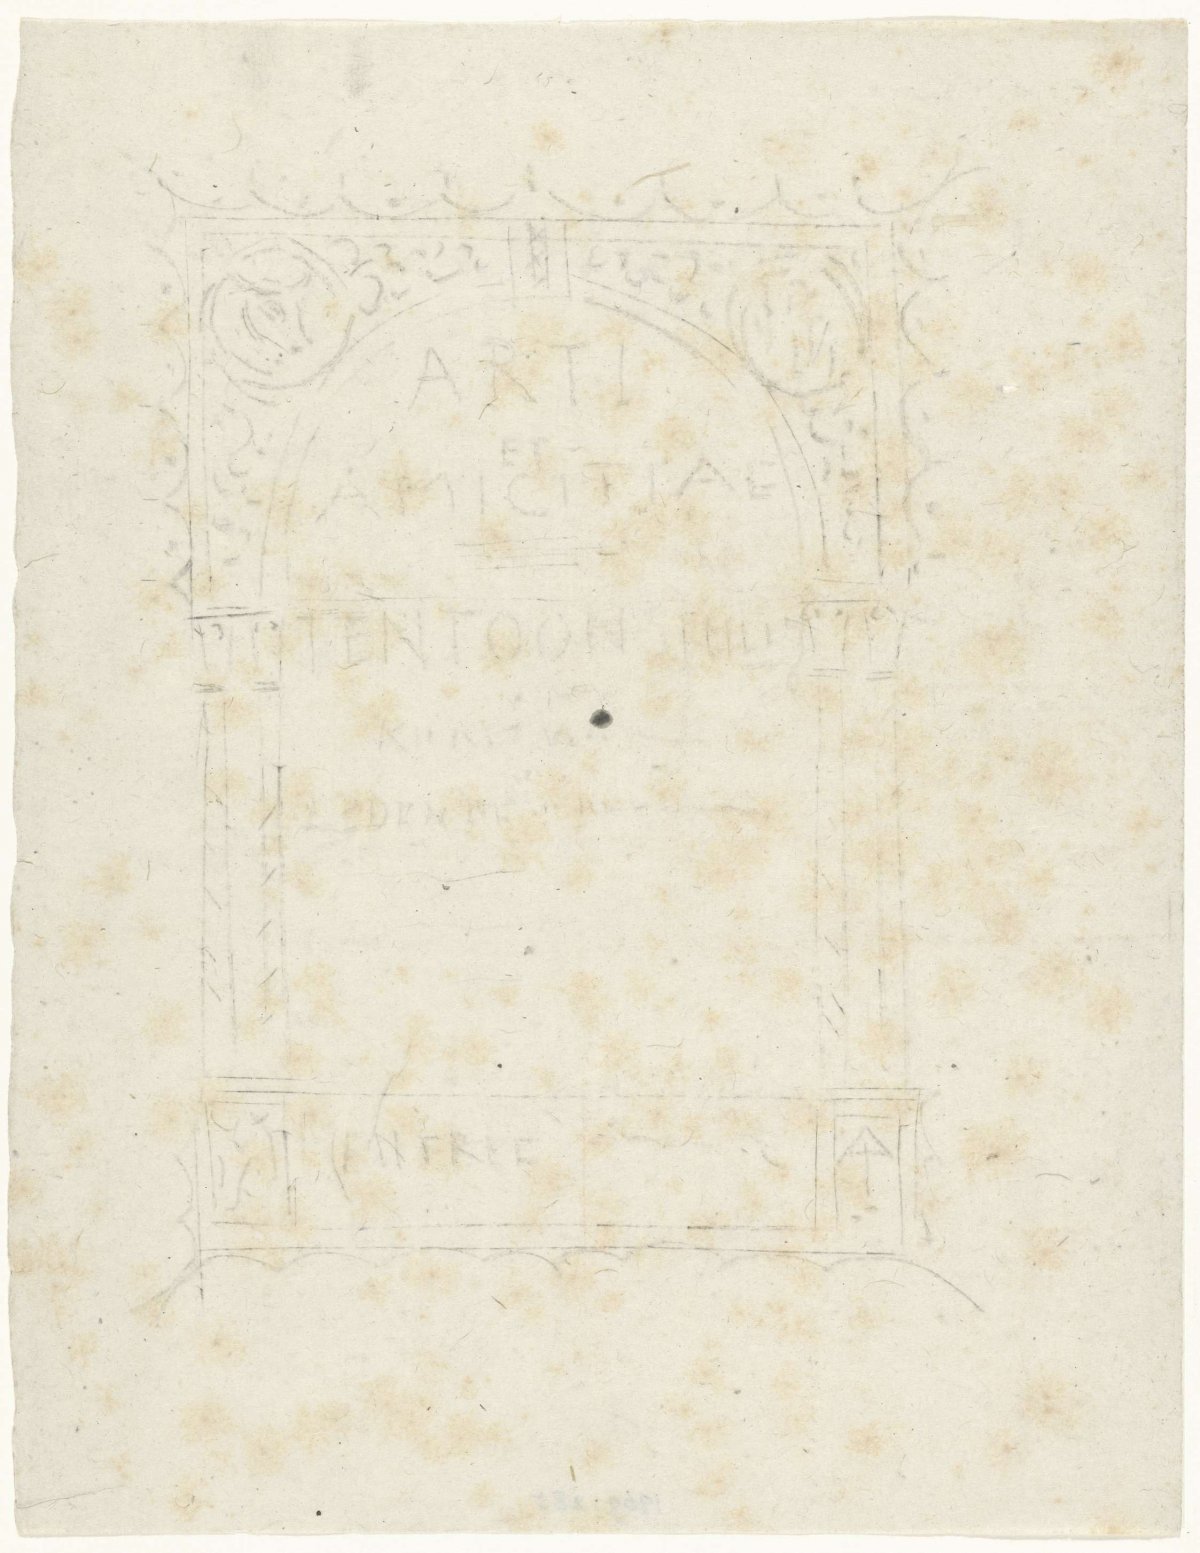 Design for a poster for Arti et Amicitiae, Gerrit Willem Dijsselhof, 1876 - 1924